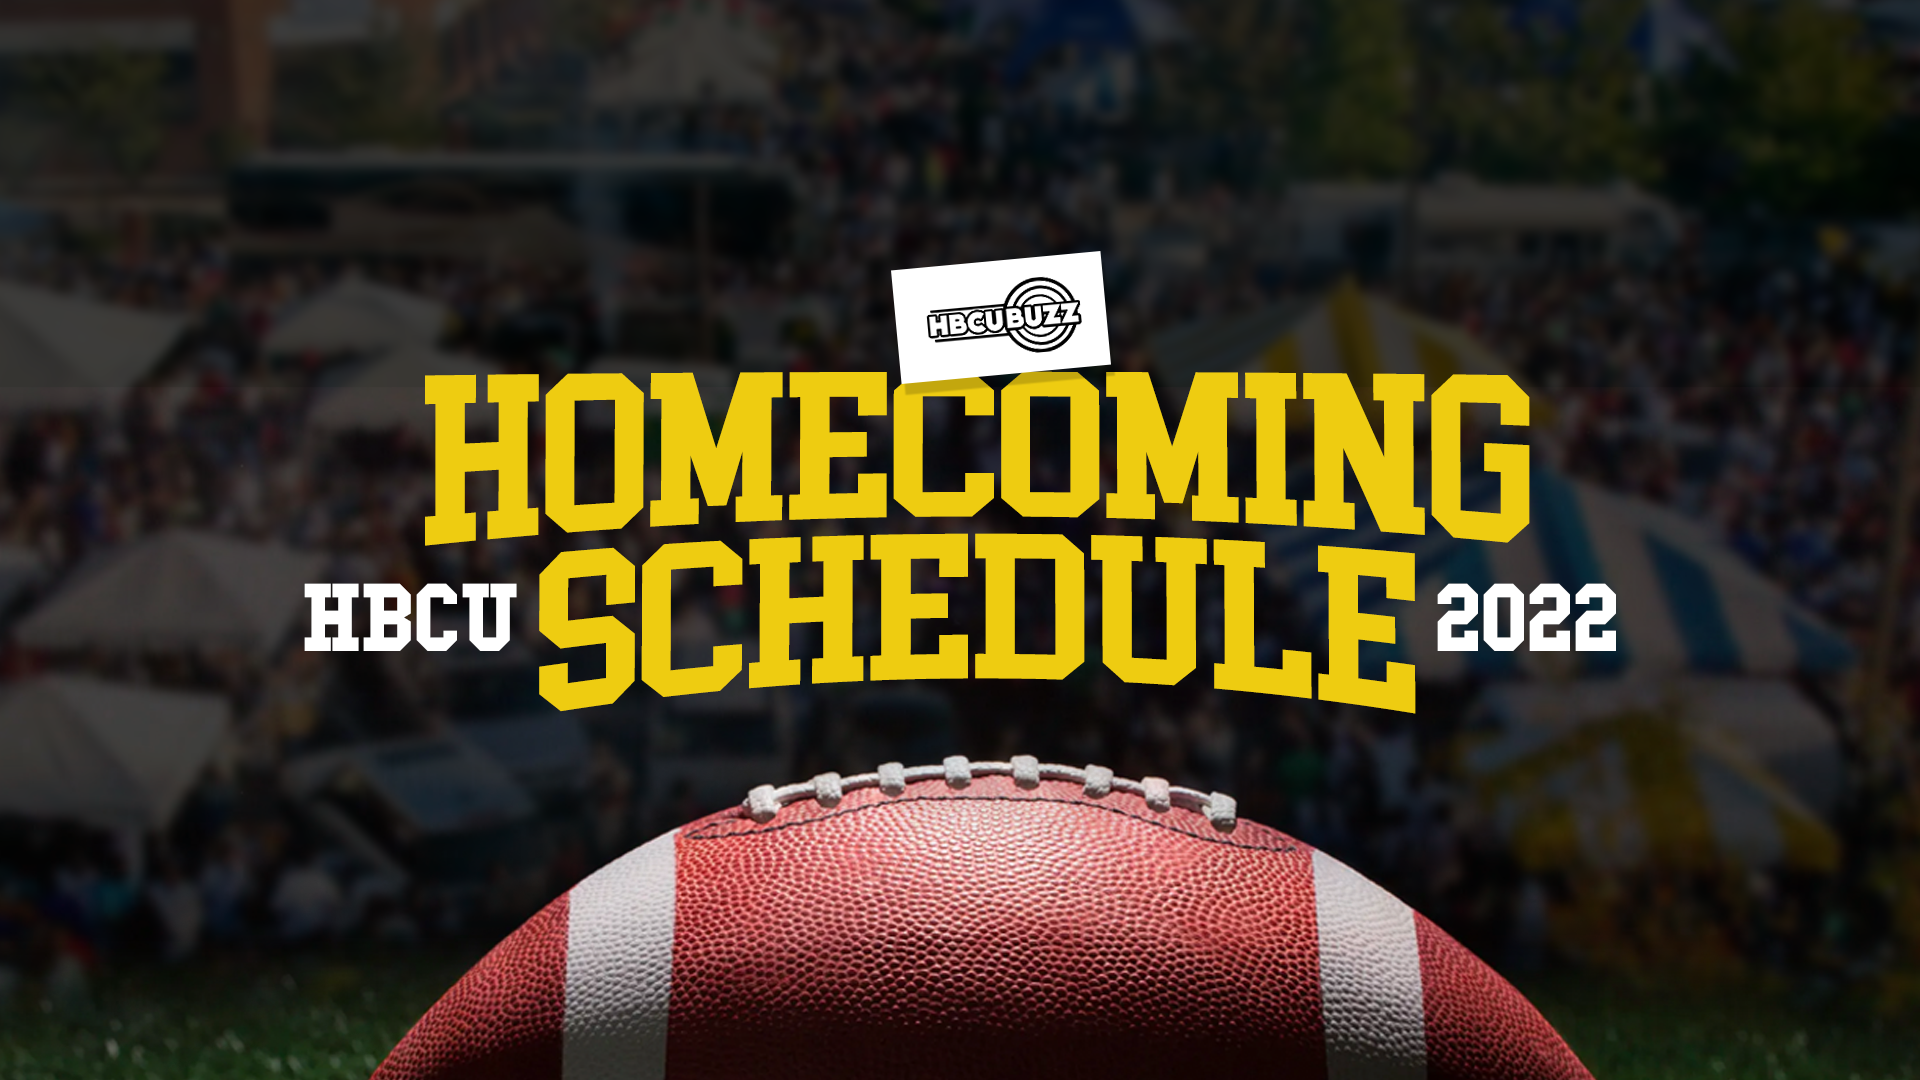 HBCU Homecoming Schedule 2022 | HBCU Buzz